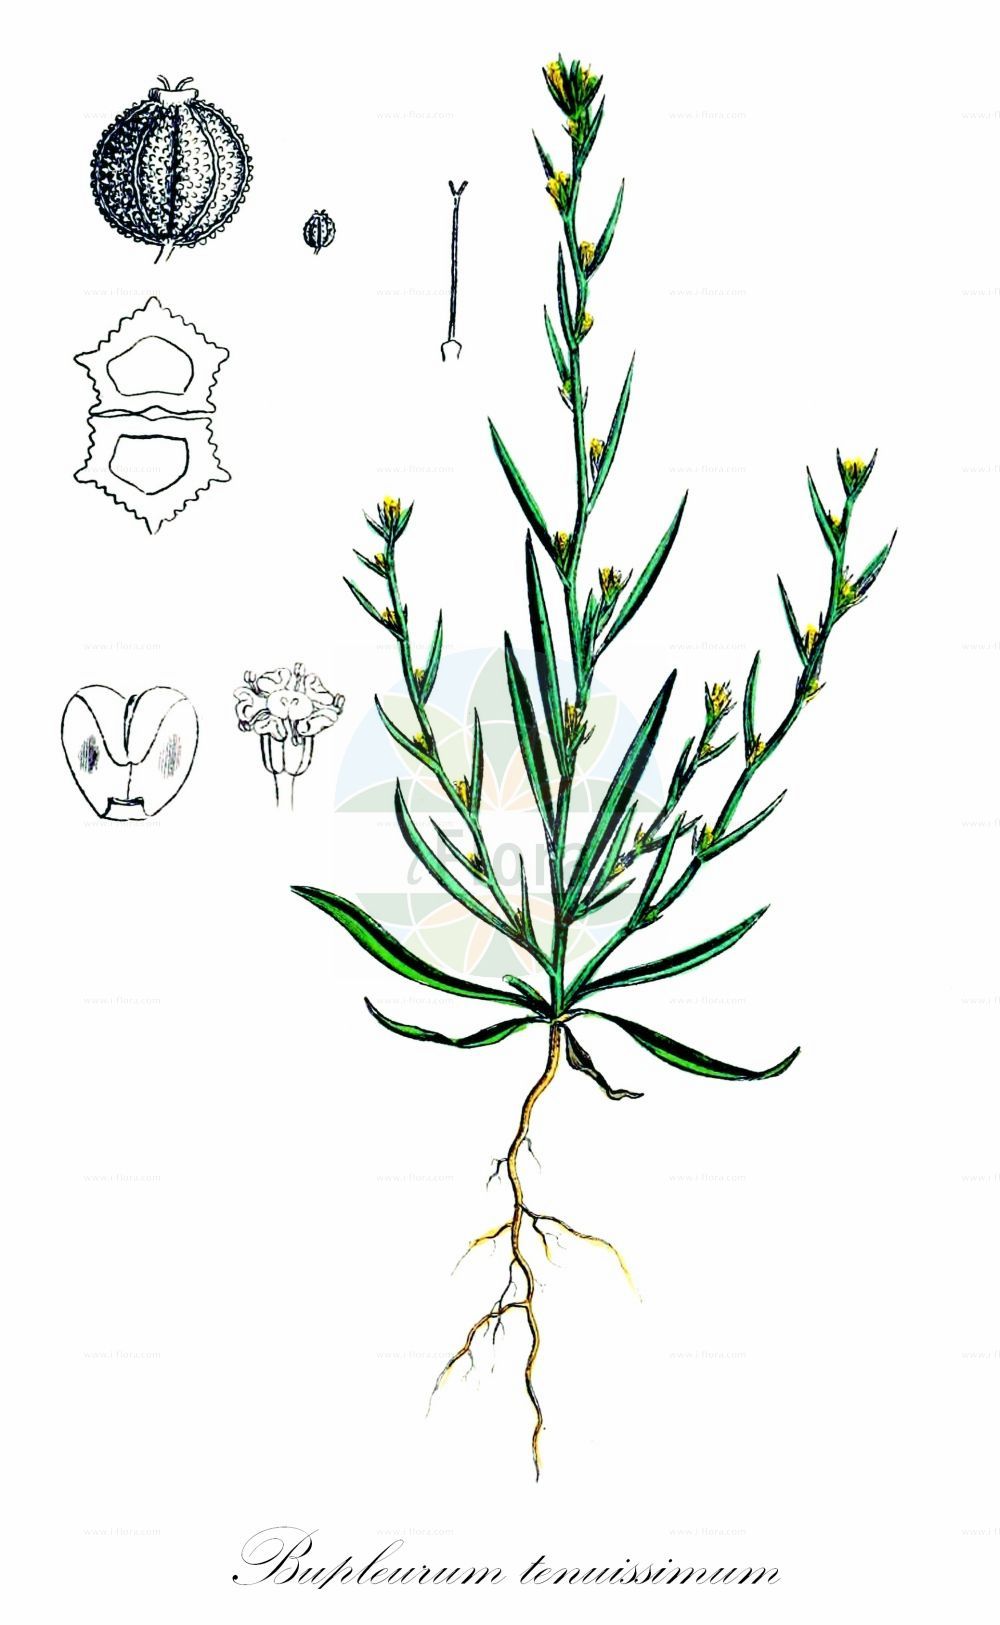 Historische Abbildung von Bupleurum tenuissimum (Salz-Hasenohr - Slender Hare's-ear). Das Bild zeigt Blatt, Bluete, Frucht und Same. ---- Historical Drawing of Bupleurum tenuissimum (Salz-Hasenohr - Slender Hare's-ear). The image is showing leaf, flower, fruit and seed.(Bupleurum tenuissimum,Salz-Hasenohr,Slender Hare's-ear,Bupleurum tenuissimum,Salz-Hasenohr,Zartes Hasenohr,Slender Hare's-ear,Smallest Hare's-ear,Bupleurum,Hasenohr,Hare's Ear,Apiaceae,Doldengewächse,Carrot family,Blatt,Bluete,Frucht,Same,leaf,flower,fruit,seed,Sowerby (1790-1813))